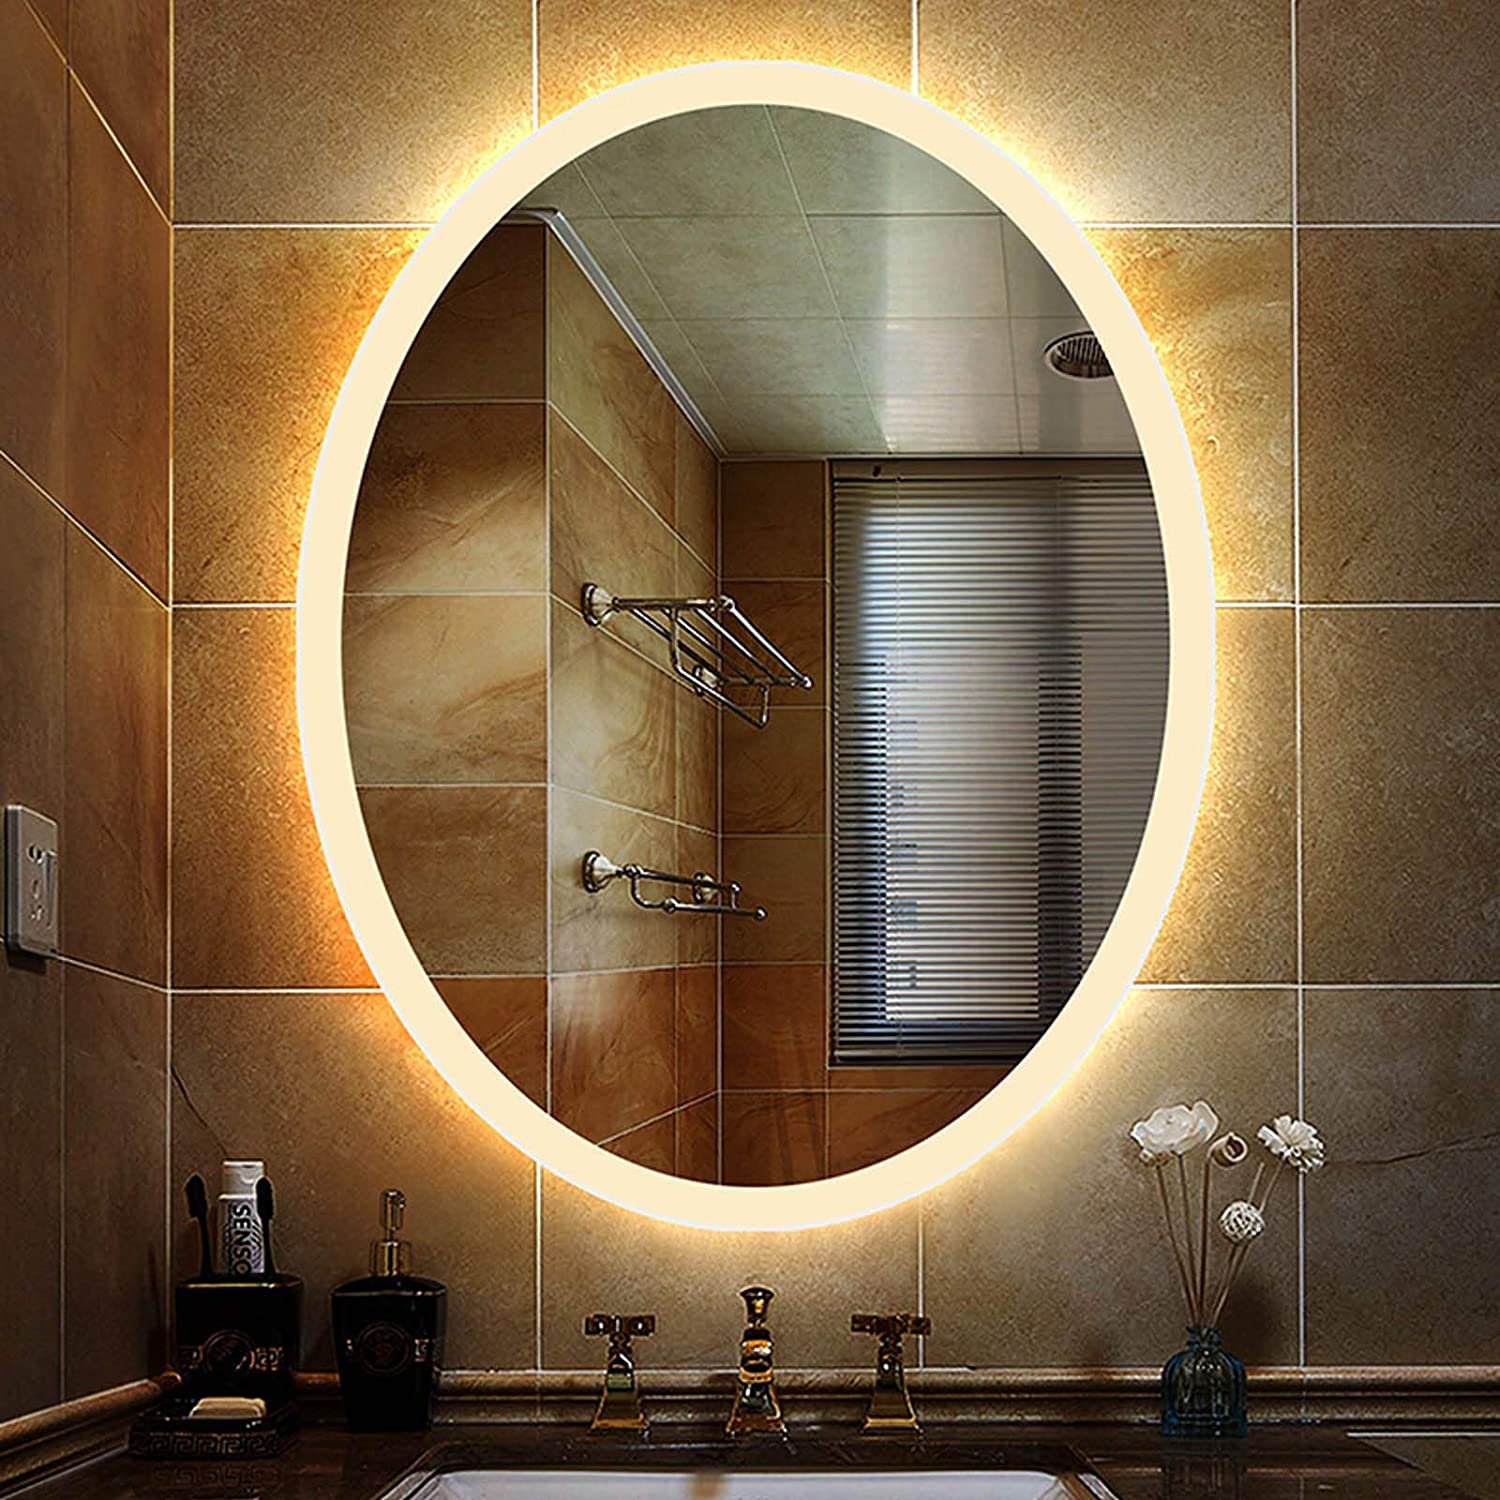 Zerkalo. Fus 700.15-01 зеркало овальное с подсветкой. Зеркало в ванную. Круглое зеркало в ванную. Зеркало с подсветкой в ванную.